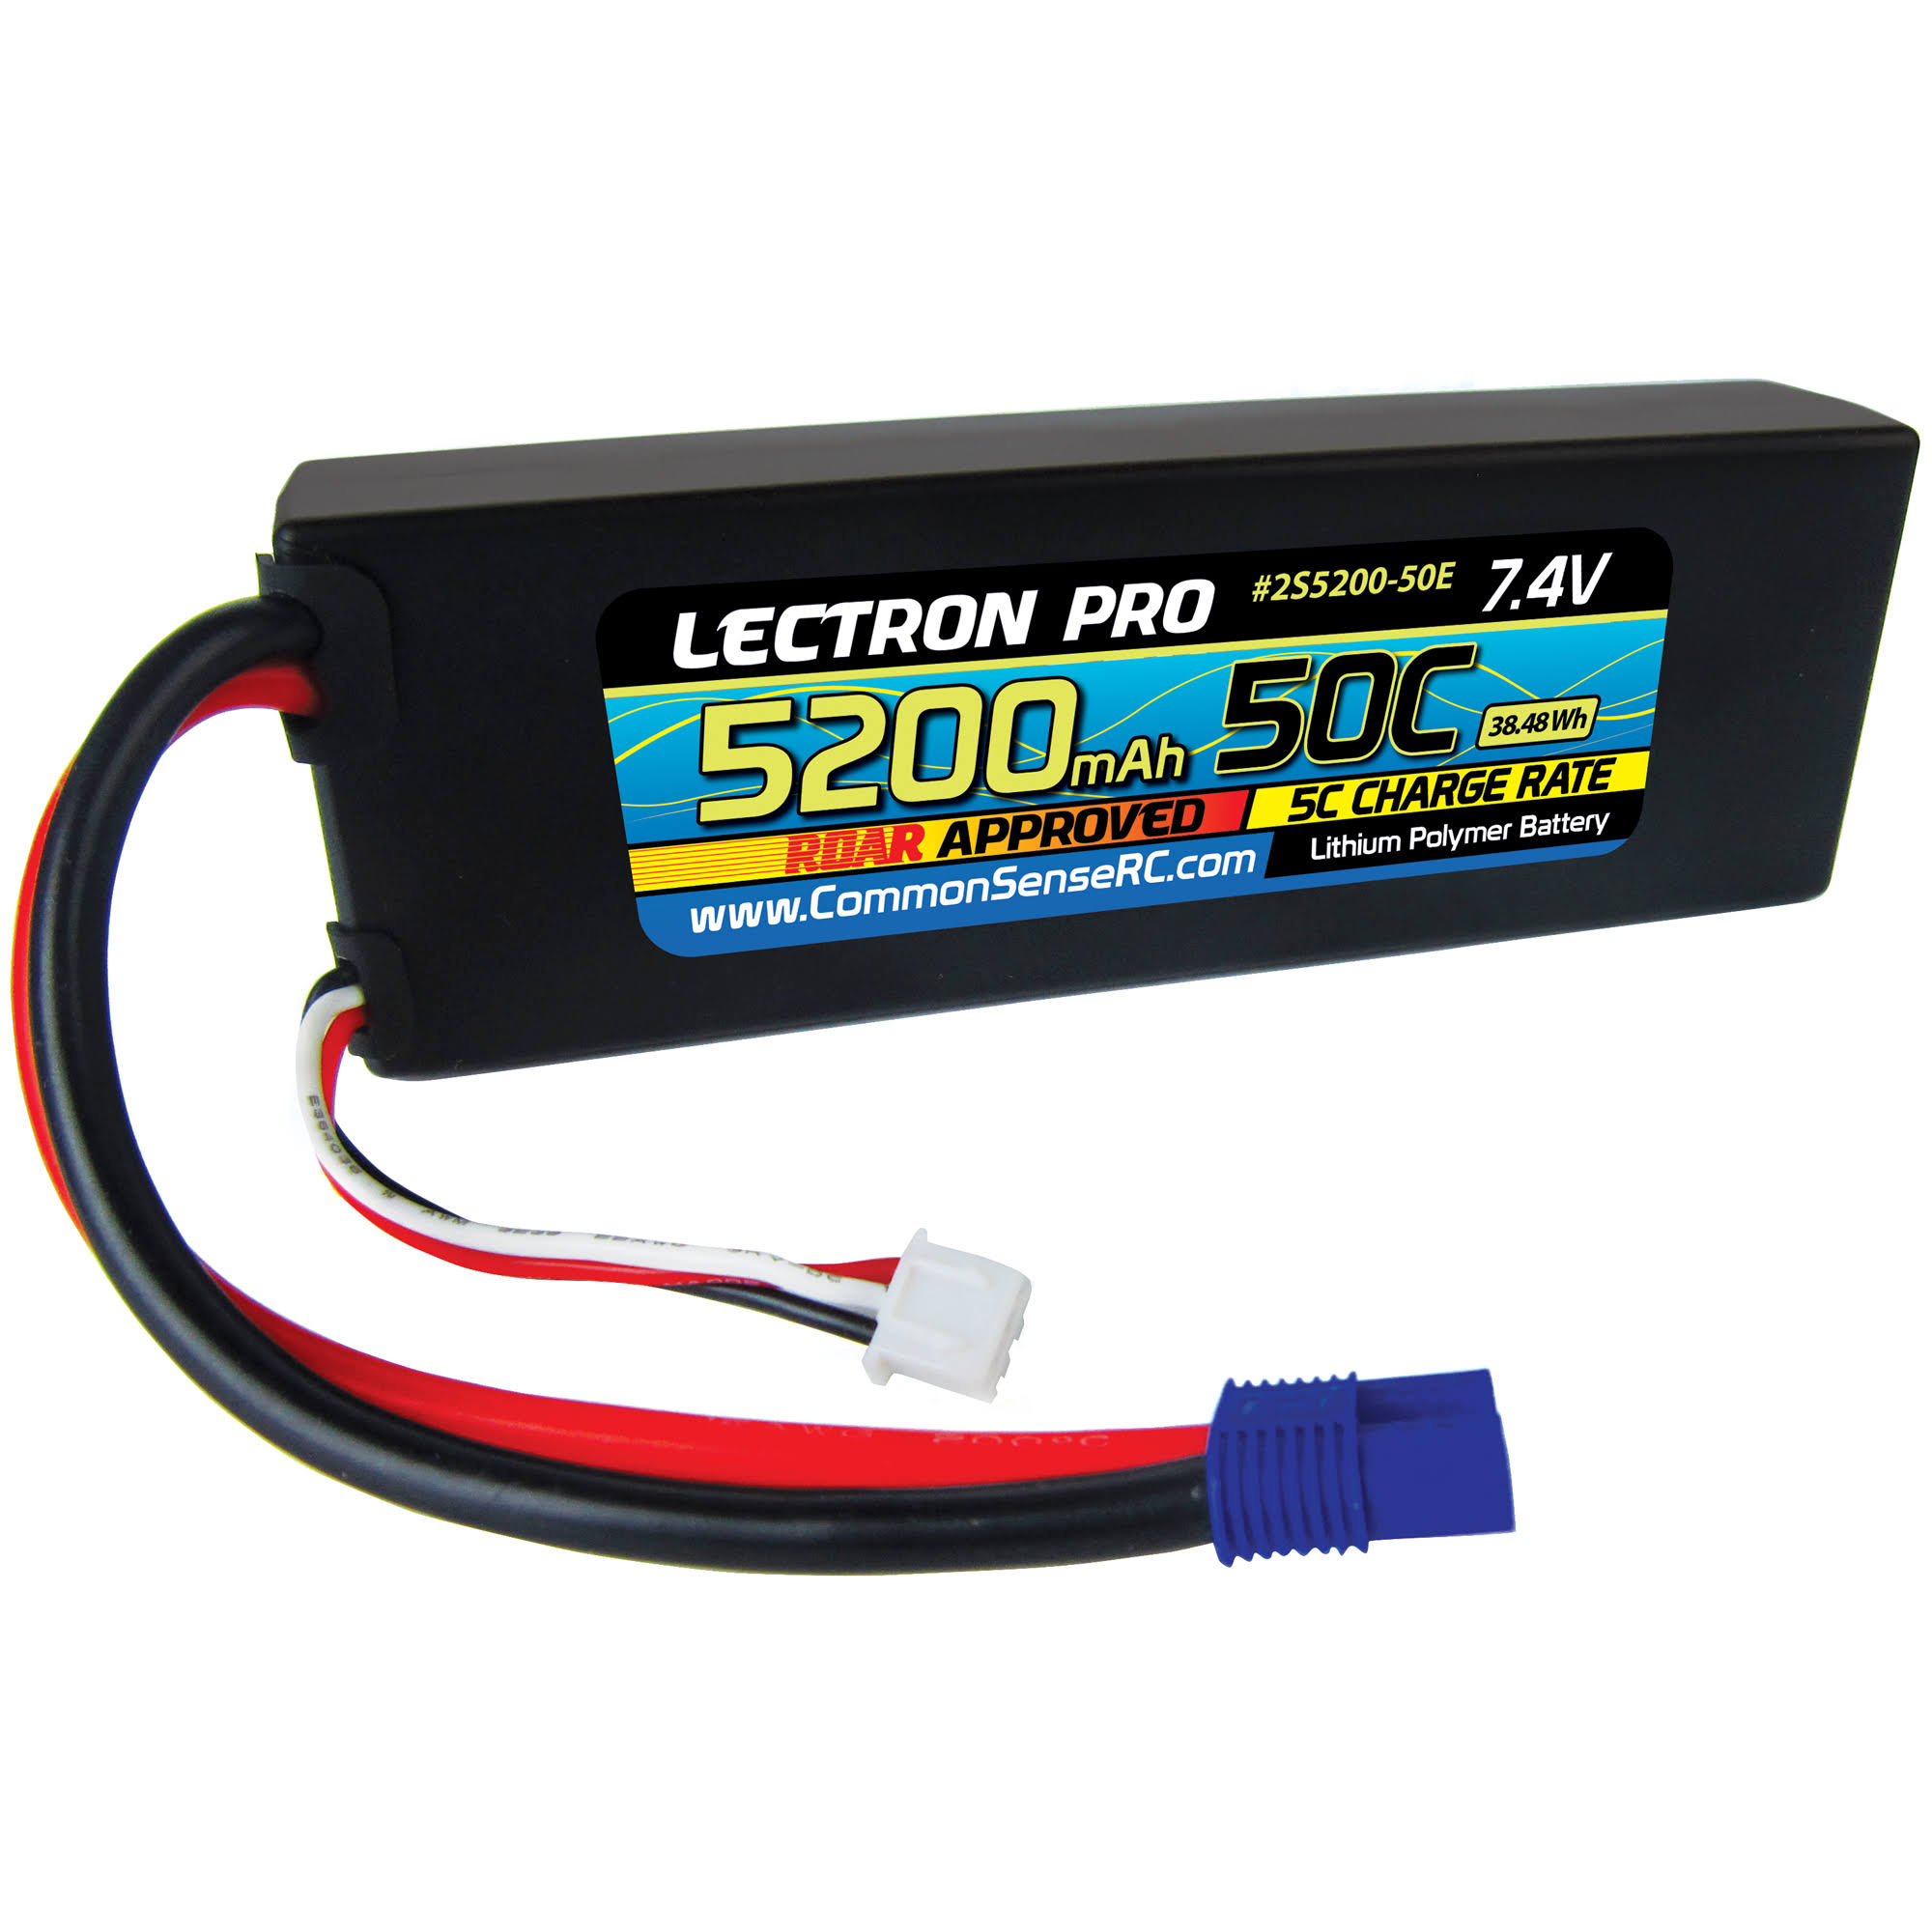 Lectron Pro Common Sense Rc 50C Lipo Battery - 5200mah, 7.4V